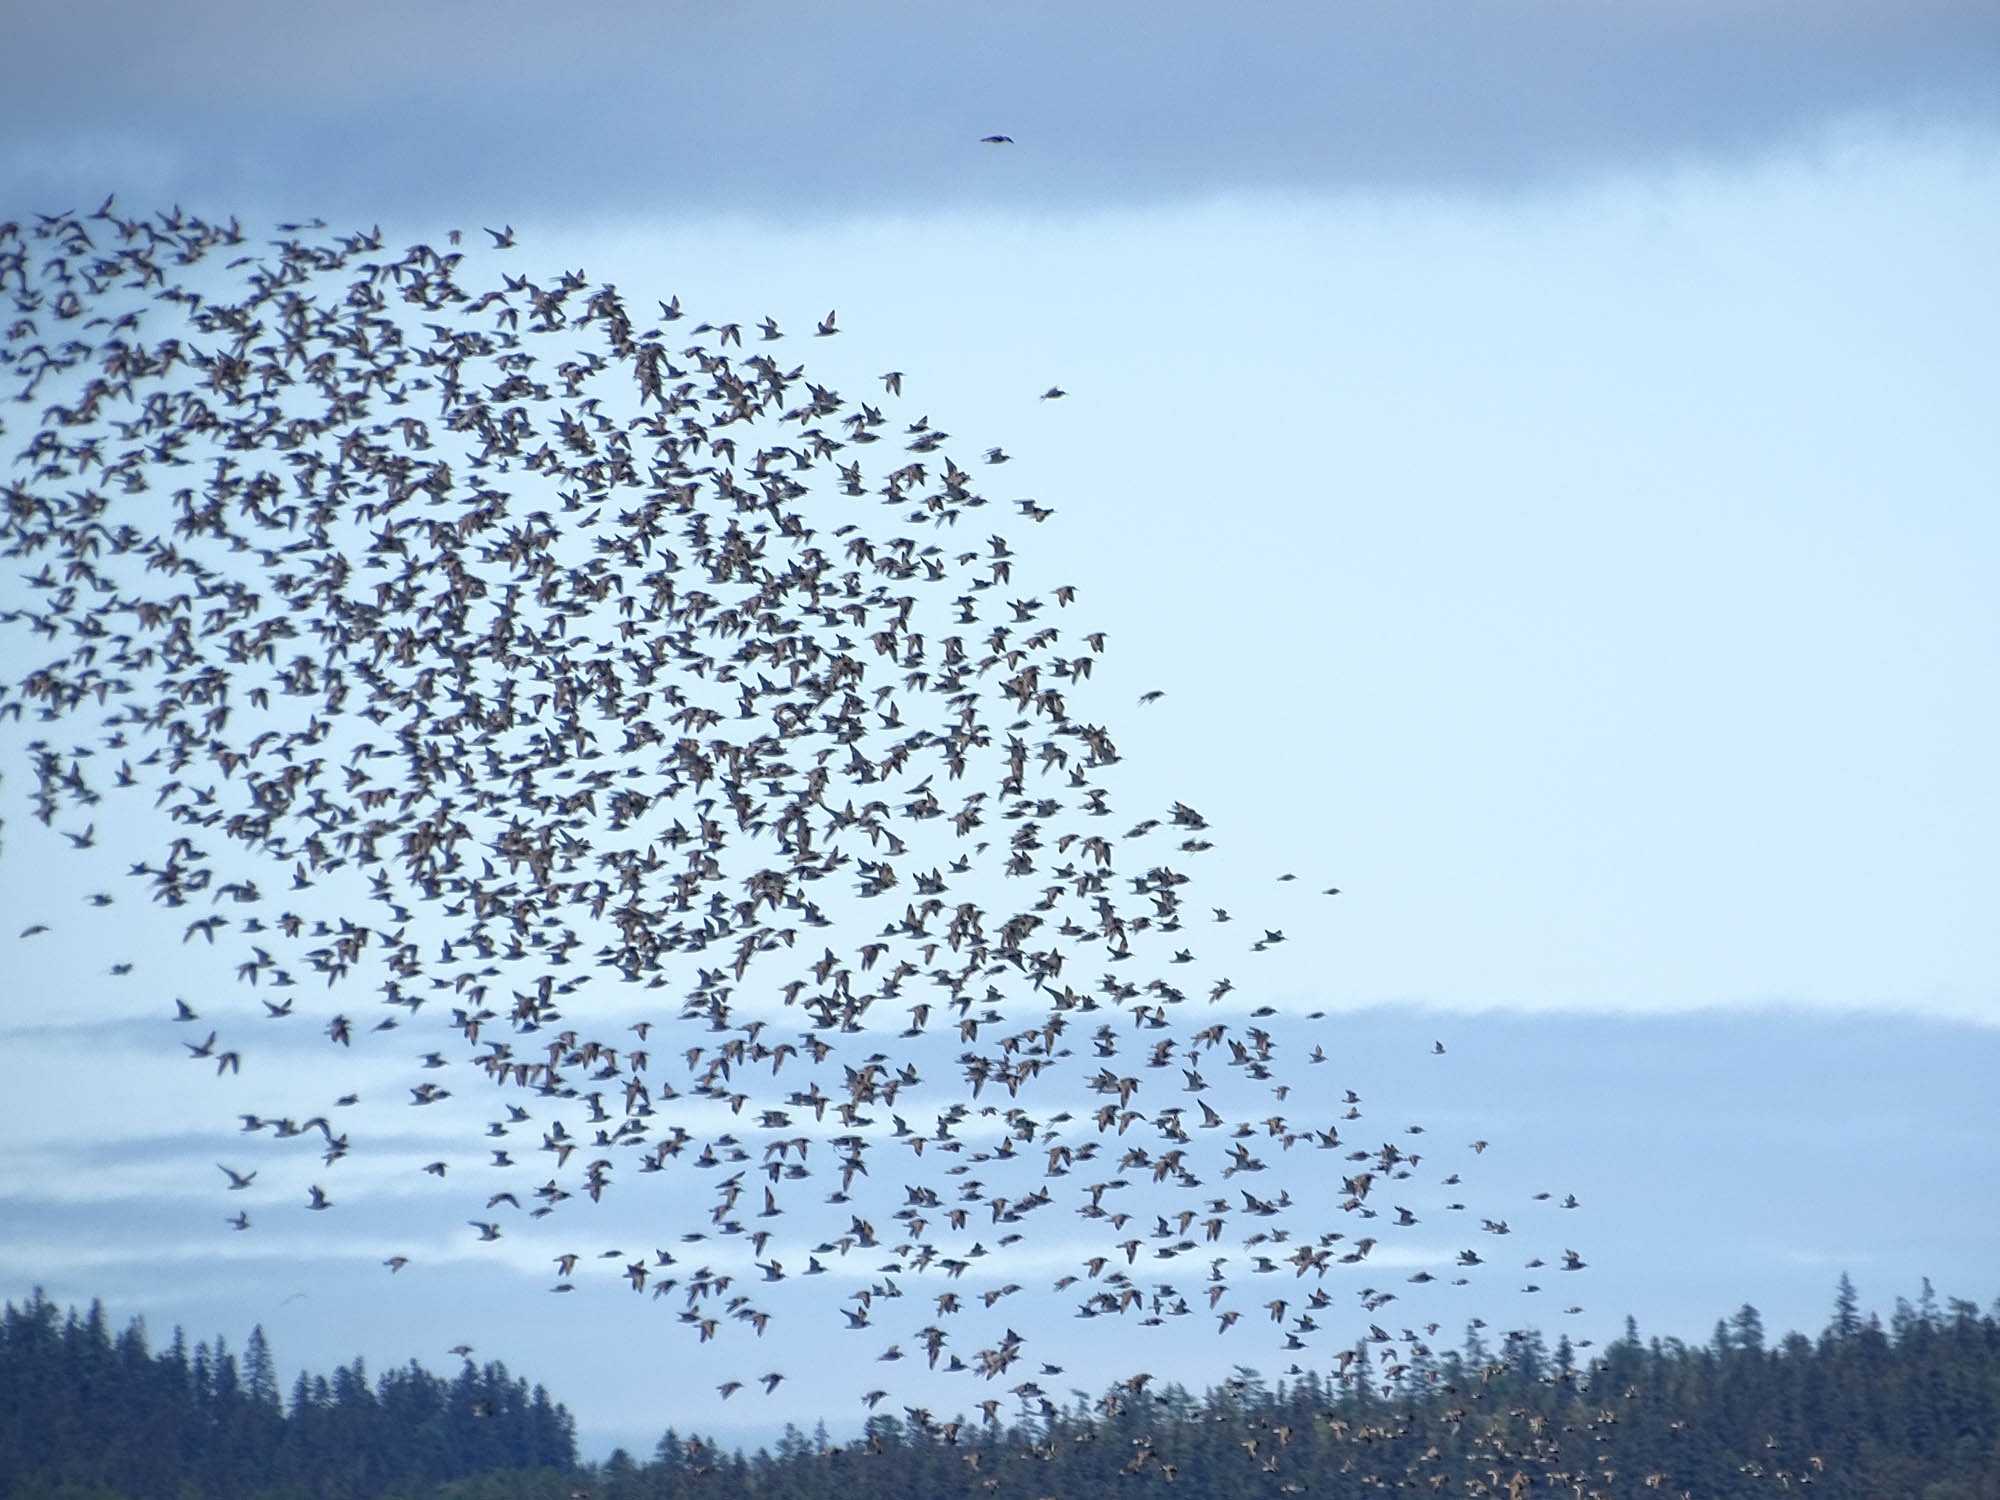 Кулики являются наиболее массовой группой птиц морских заливов Юго-Западного Приохотья. Фото предоставлено участниками экспедиции